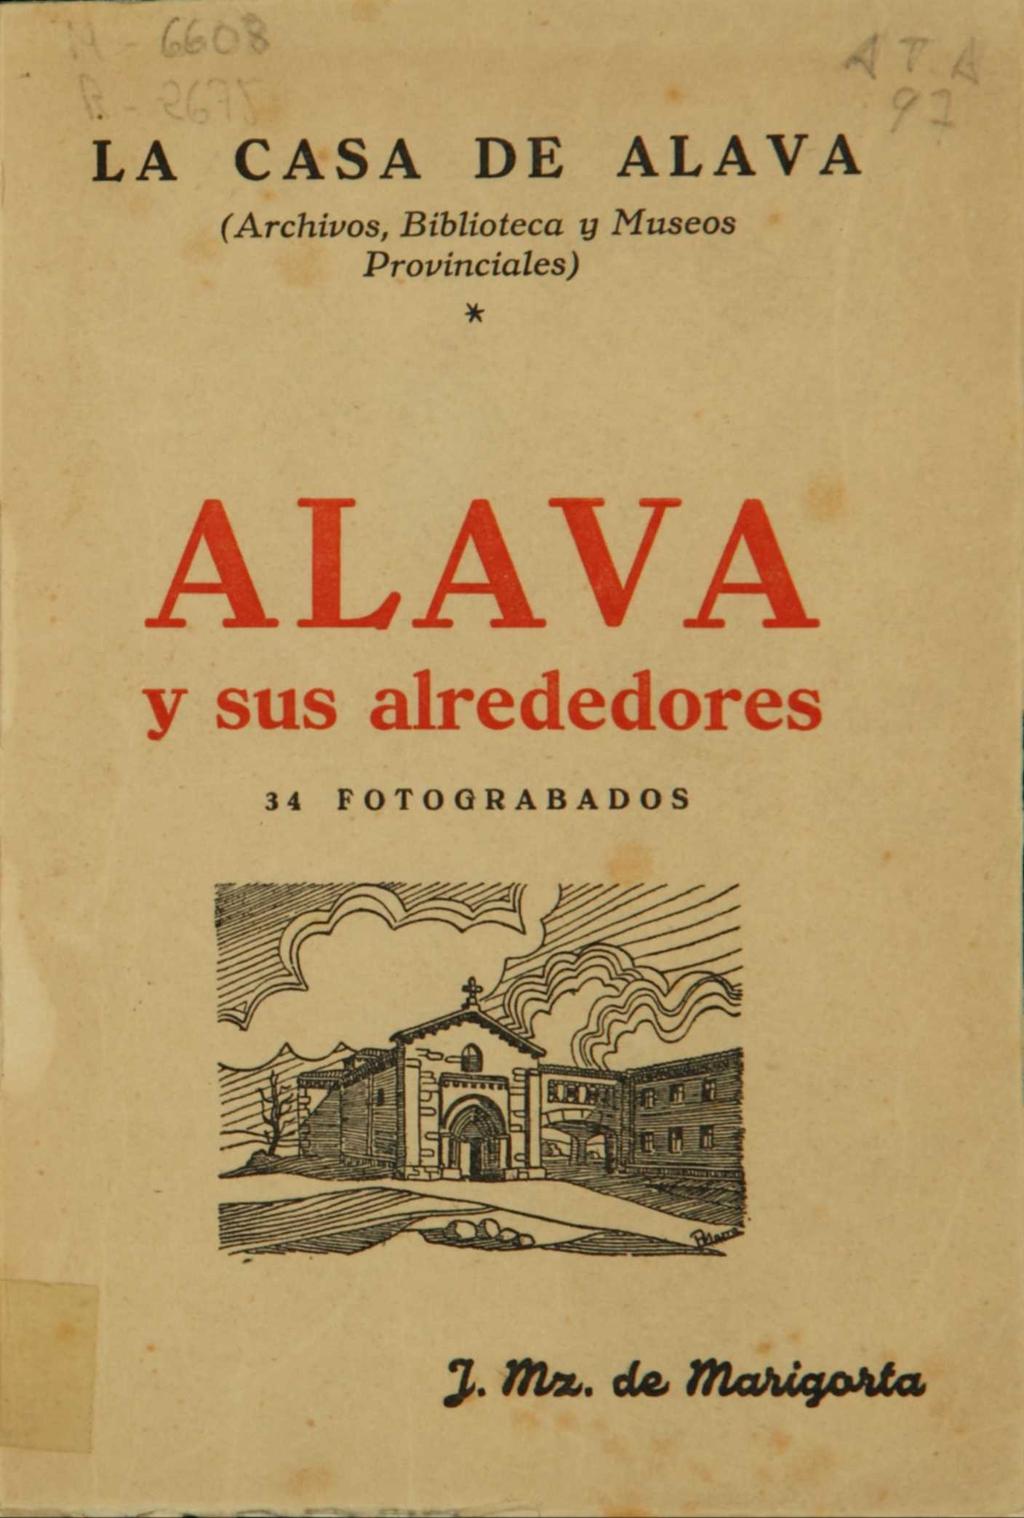 LA CASA DE ALAVA (Archivos, Biblioteca y Museos Provinciales) *